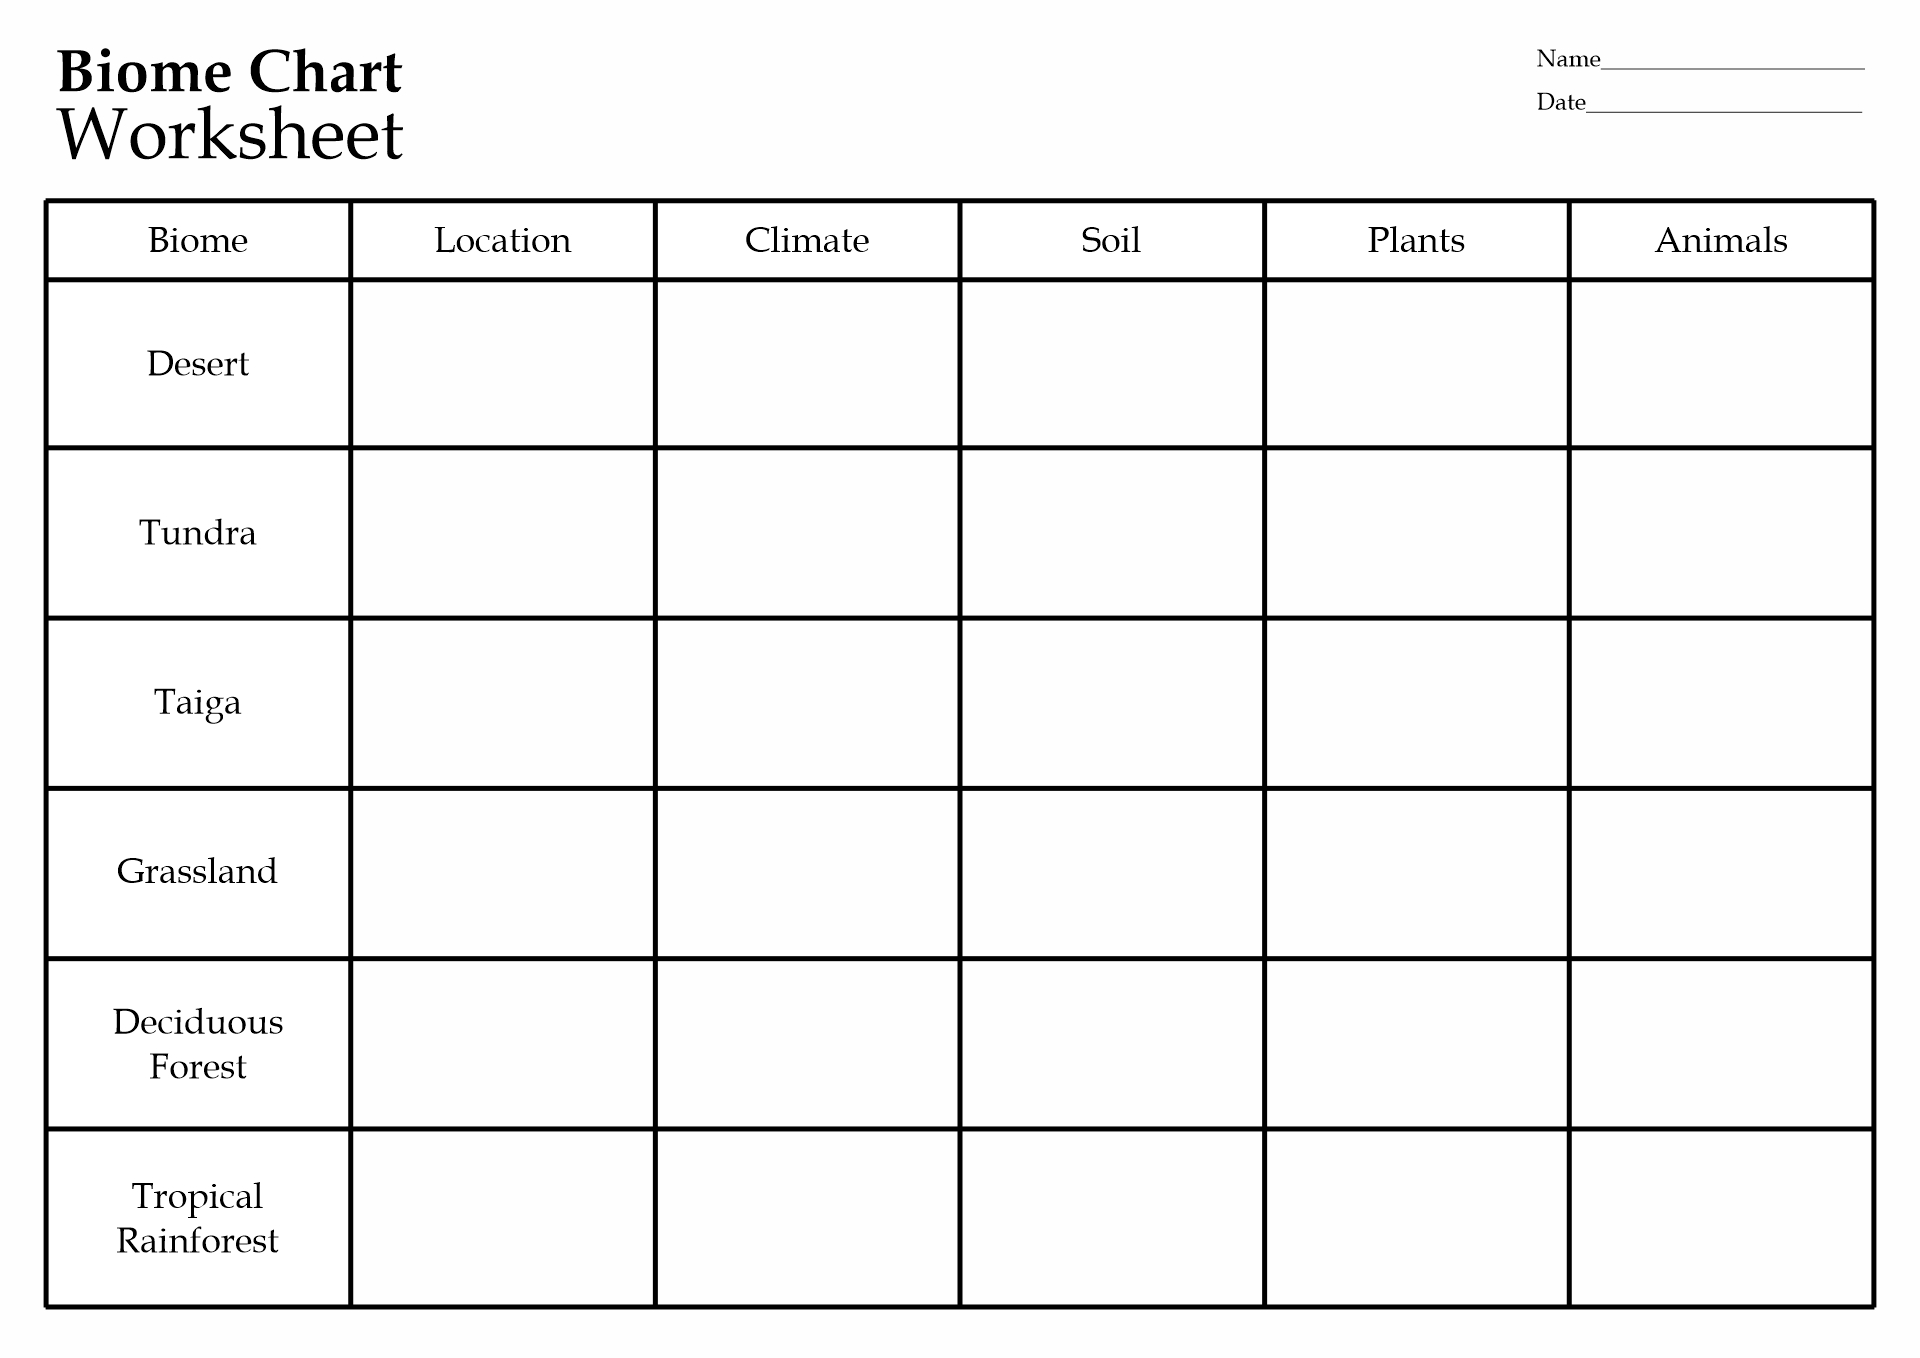 Biome Chart Worksheet